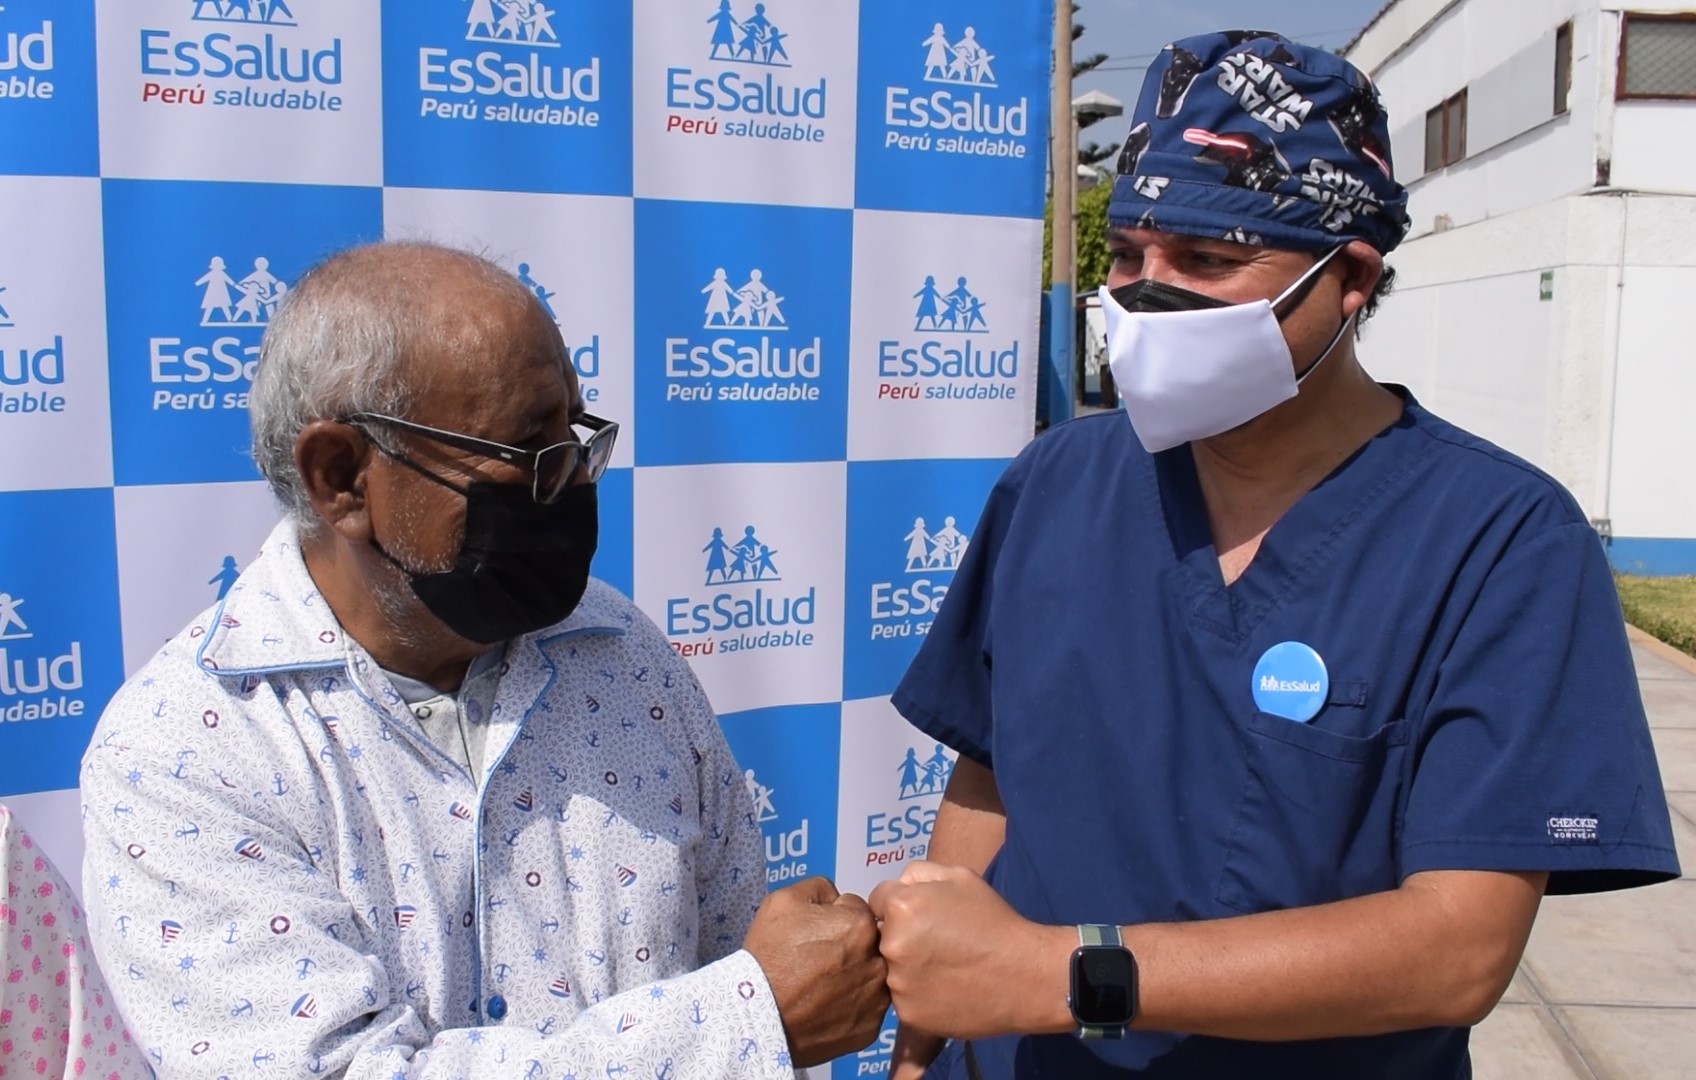 Medicos de EsSalud salvan vida de madre y adulto mayor con exitosos trasplantes renales